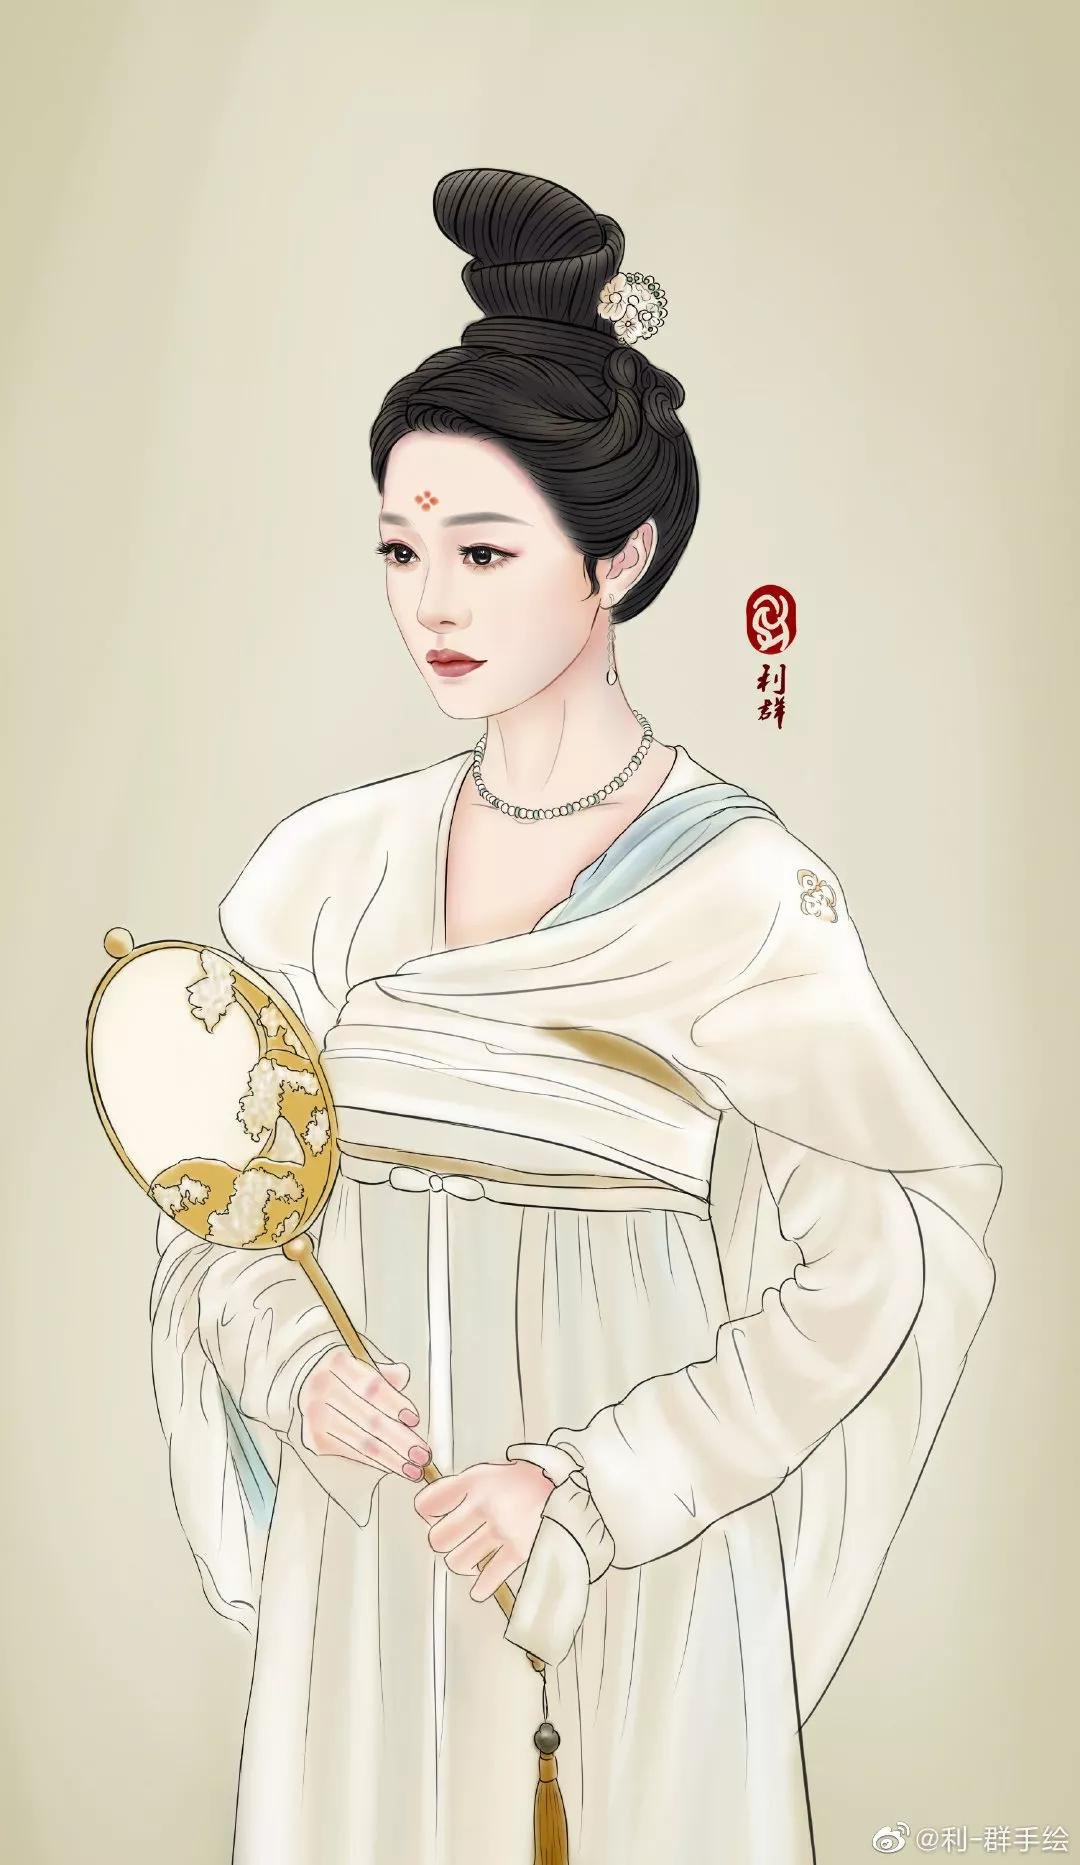 韓國筷子為什么是扁的 揭秘韓國筷子的歷史與文化